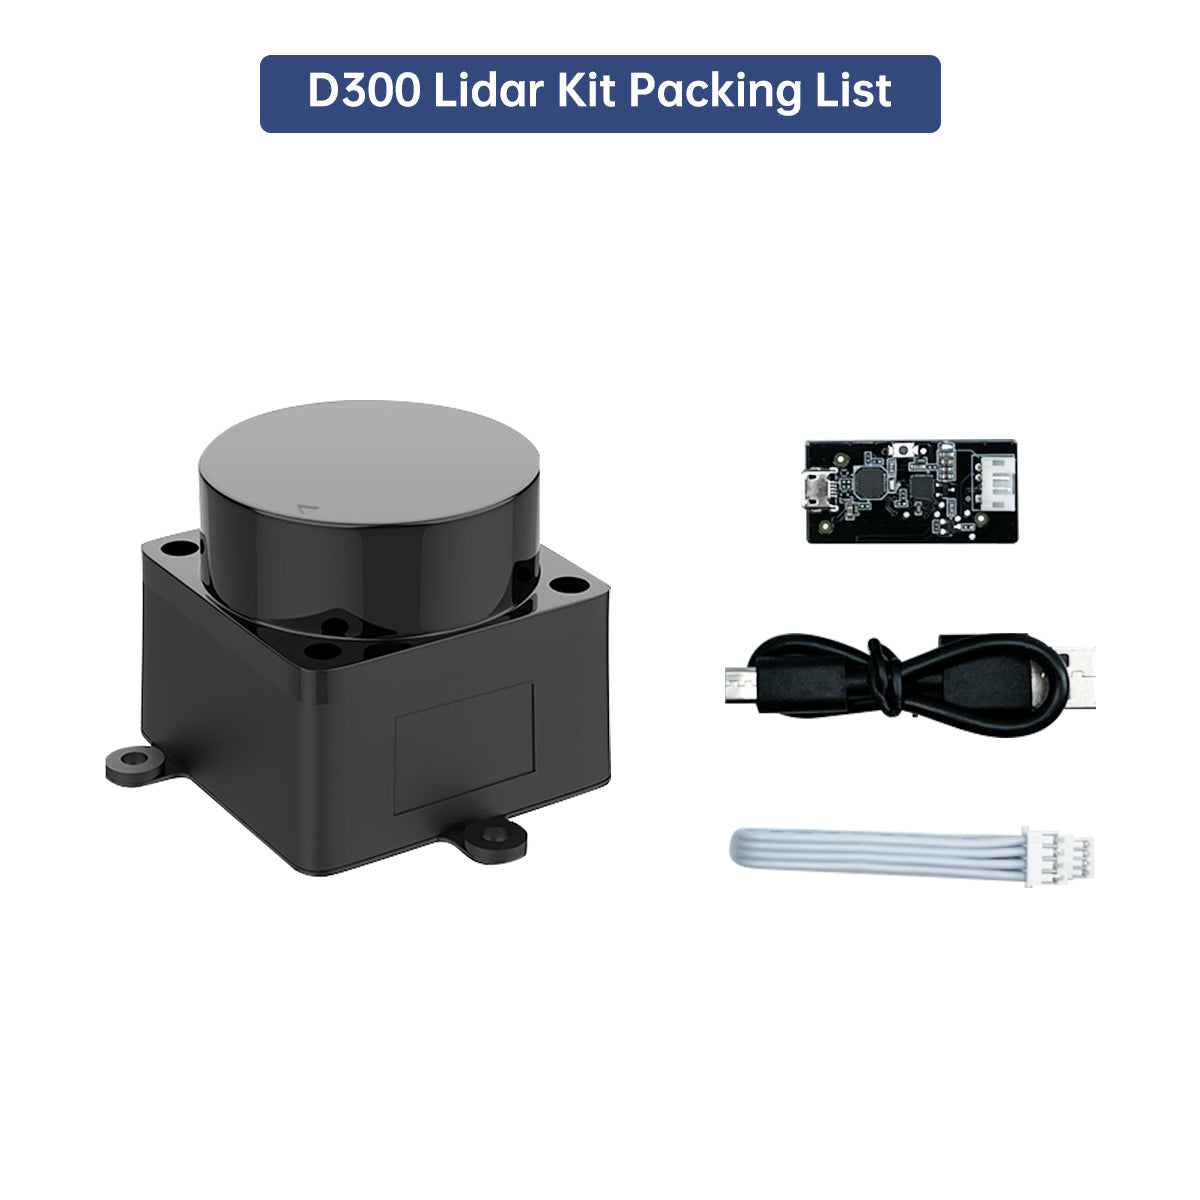 LD19 D300 Lidar Developer Kit 360 Degrees DTOF Laser Scanner Support ROS1 ROS2 Raspberry Pi Jetson Nano